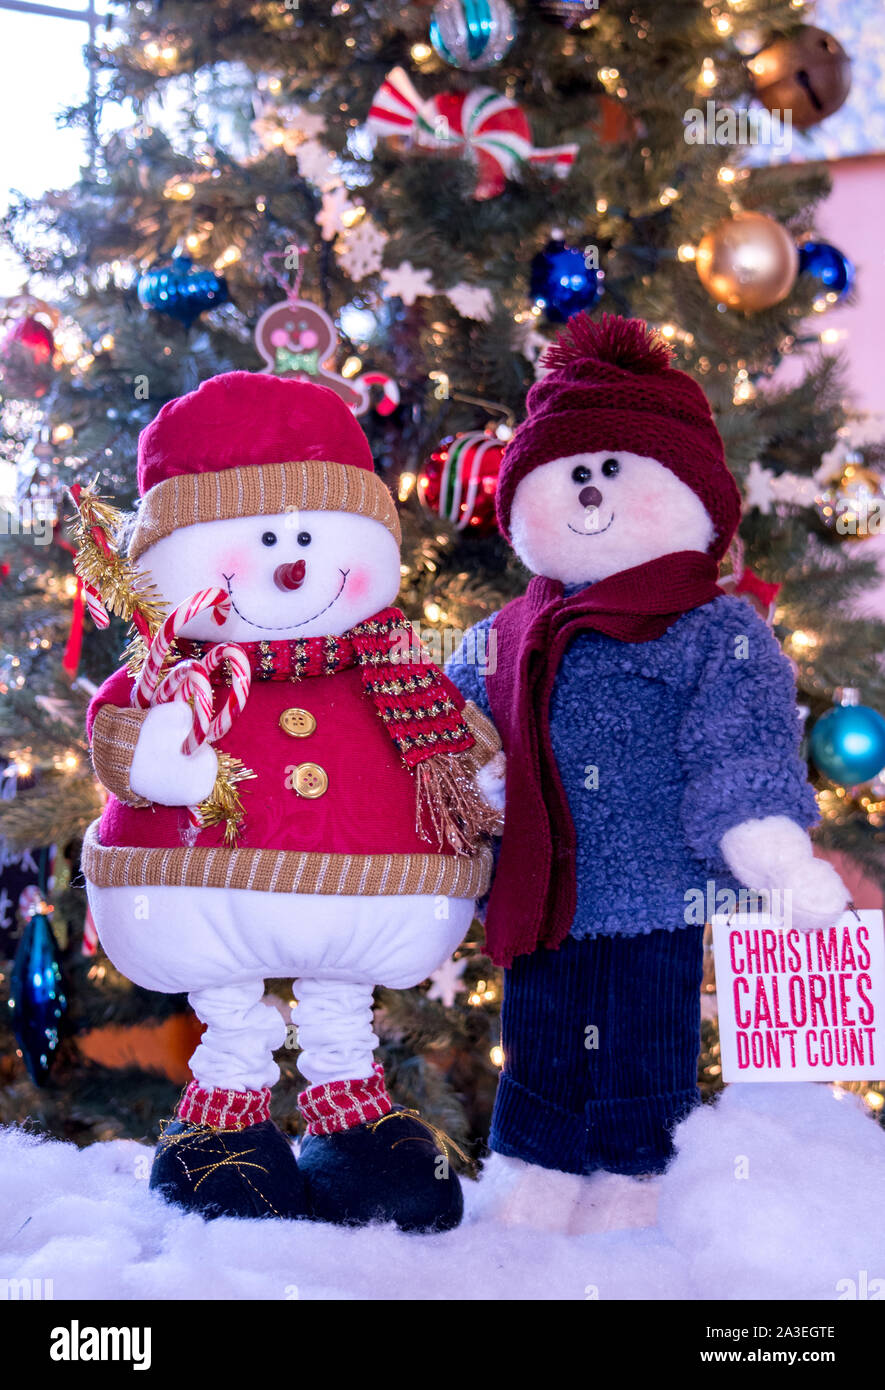 Snowman lunatique couple sont chaudement habillés pour les fêtes, et tenir un mignon signe et des cannes de bonbon sucré Banque D'Images